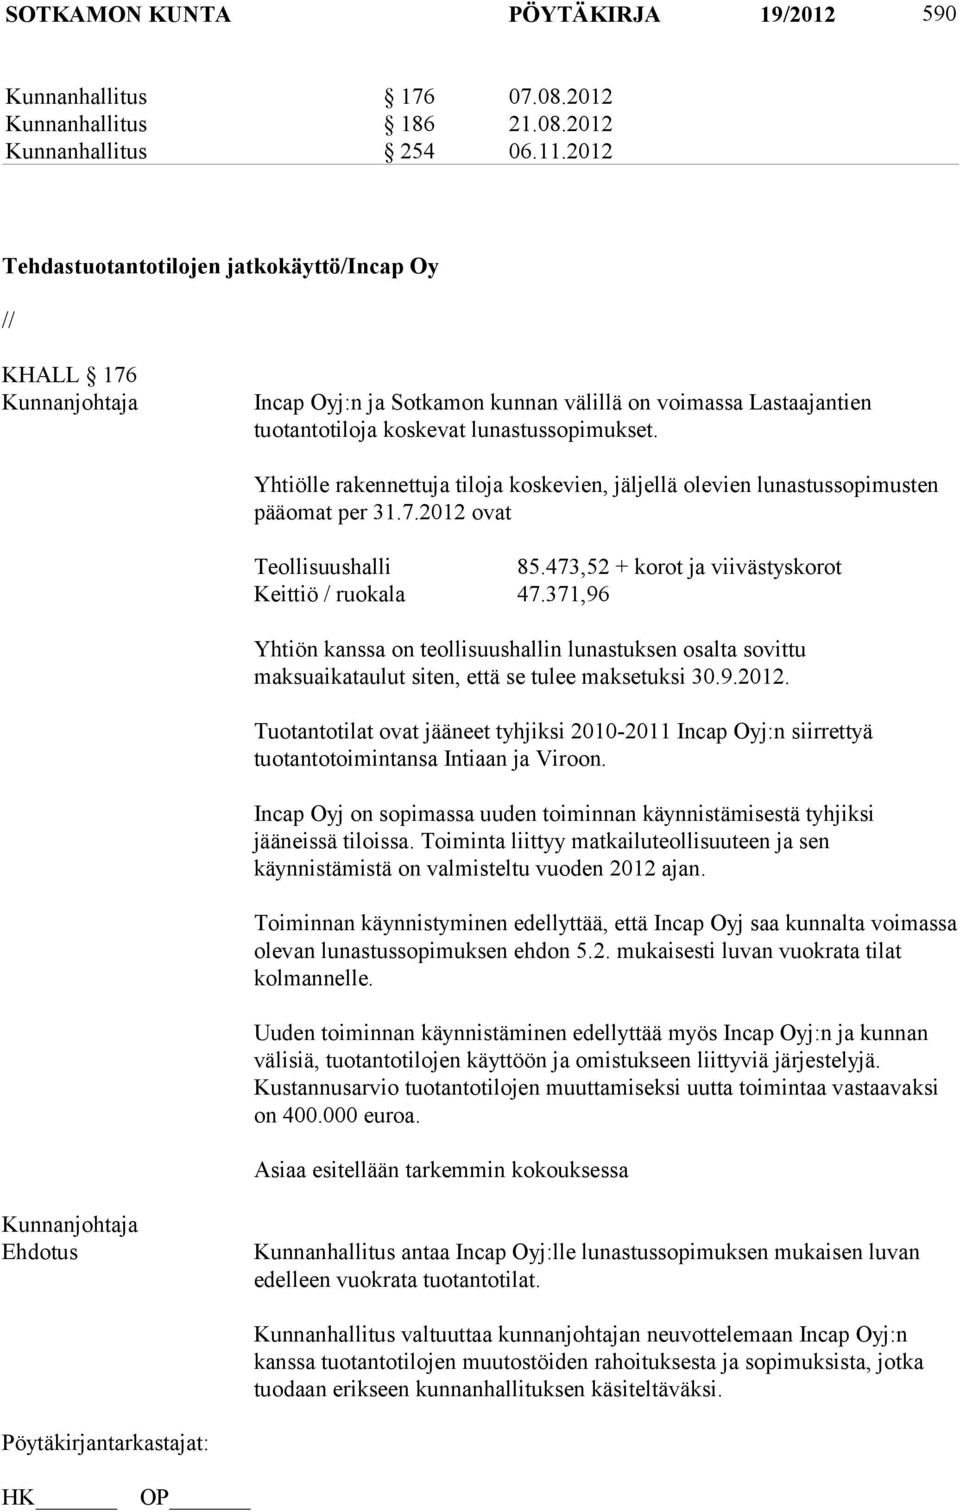 Yhtiölle rakennettuja tiloja koskevien, jäljellä olevien lunastussopimusten pääomat per 31.7.2012 ovat Teollisuushalli 85.473,52 + korot ja viivästyskorot Keittiö / ruokala 47.